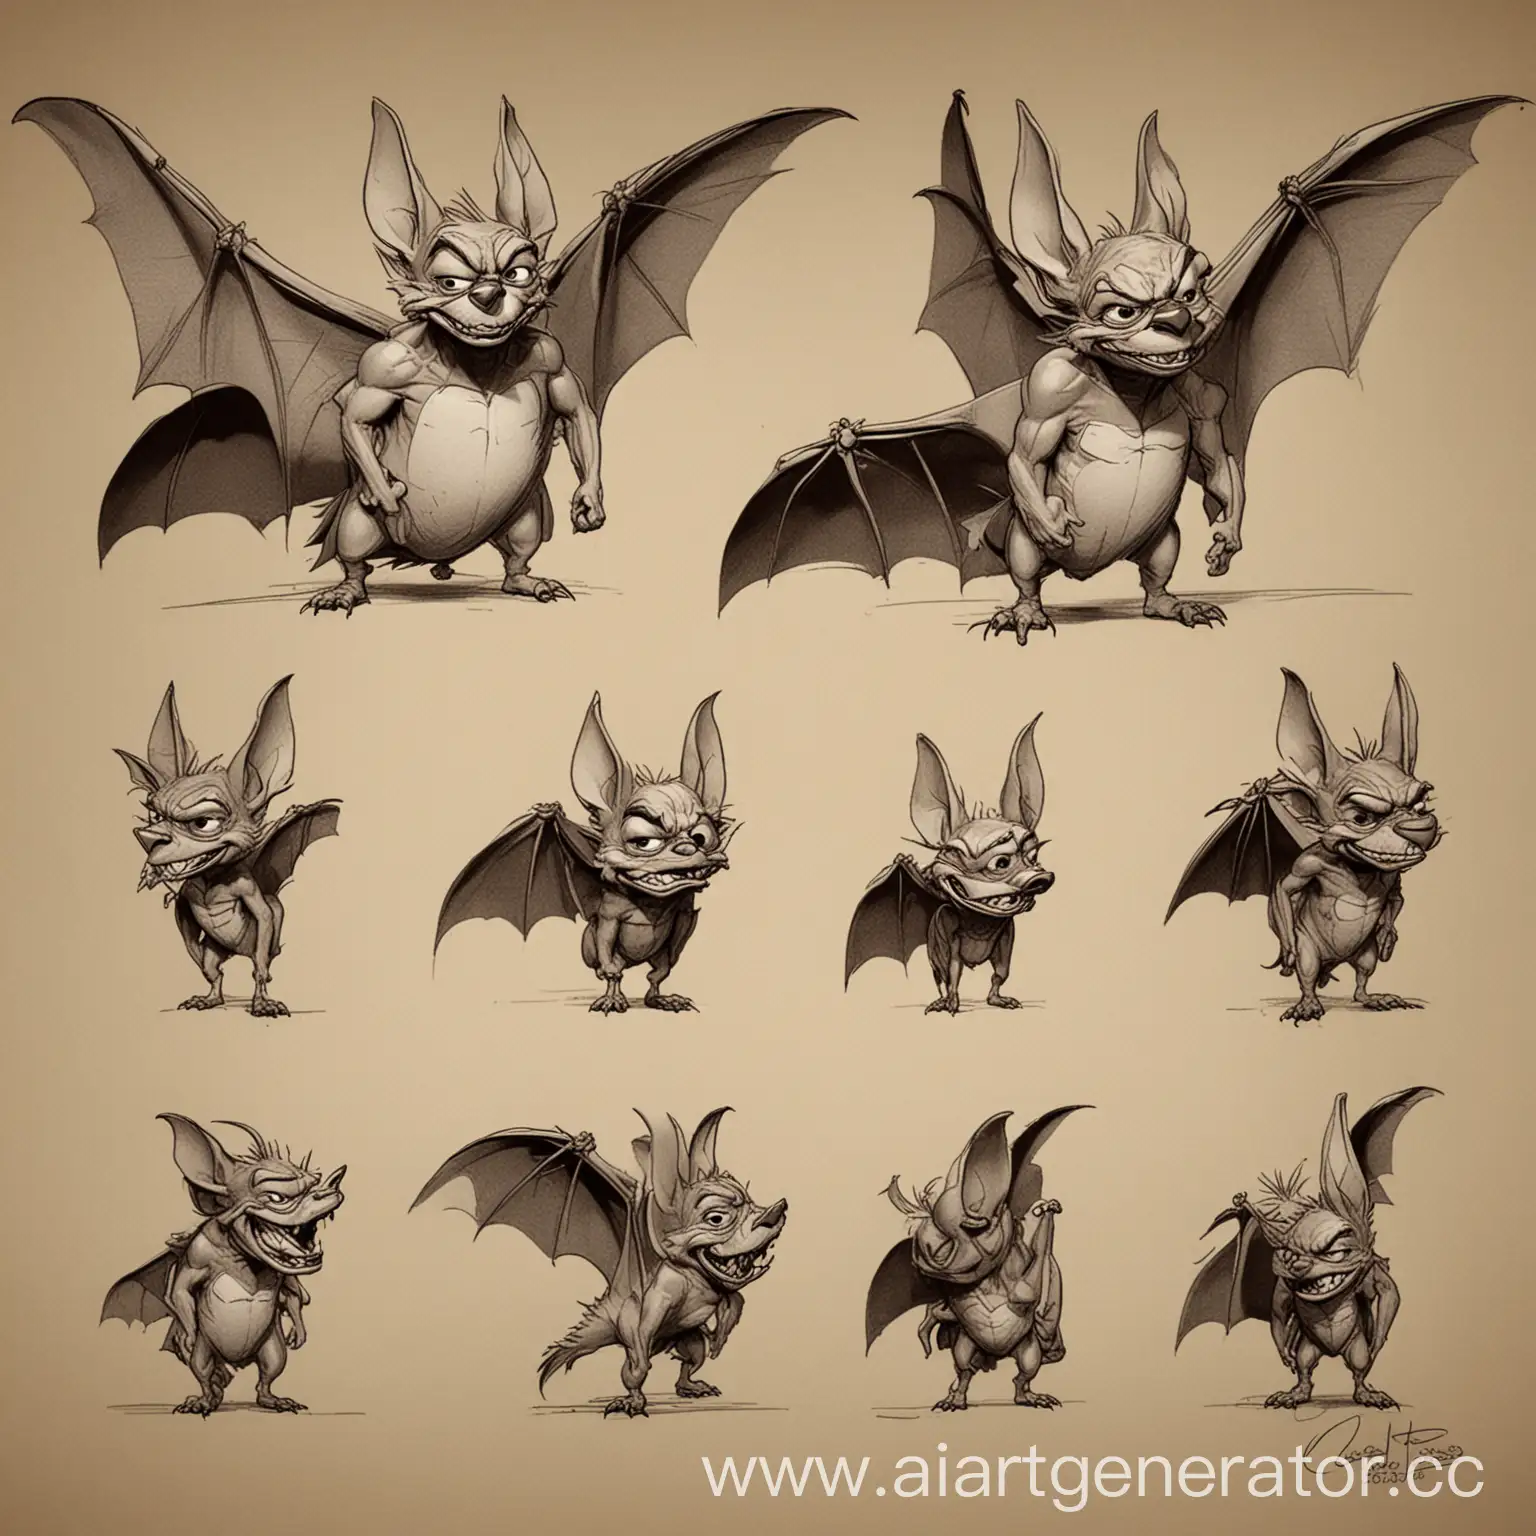 Cartoon-Bat-Character-Design-in-Chuck-Jones-Style